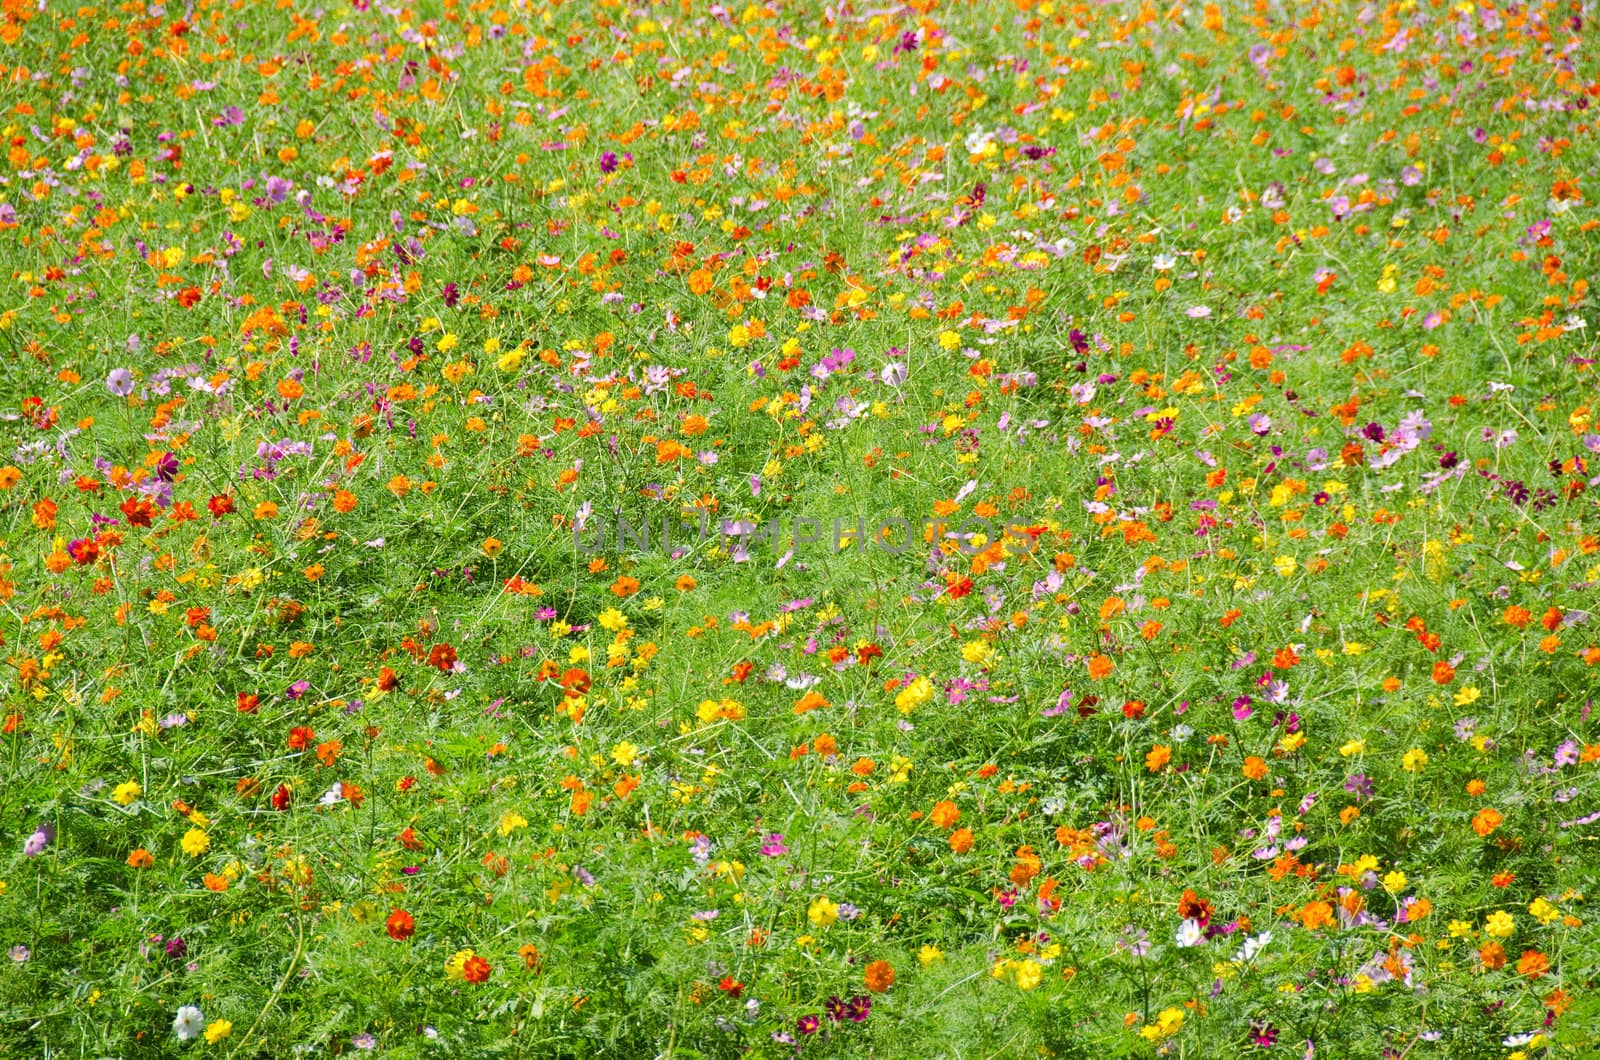 A field of cosmos flowers, Cosmos bipinnatus, in Japan